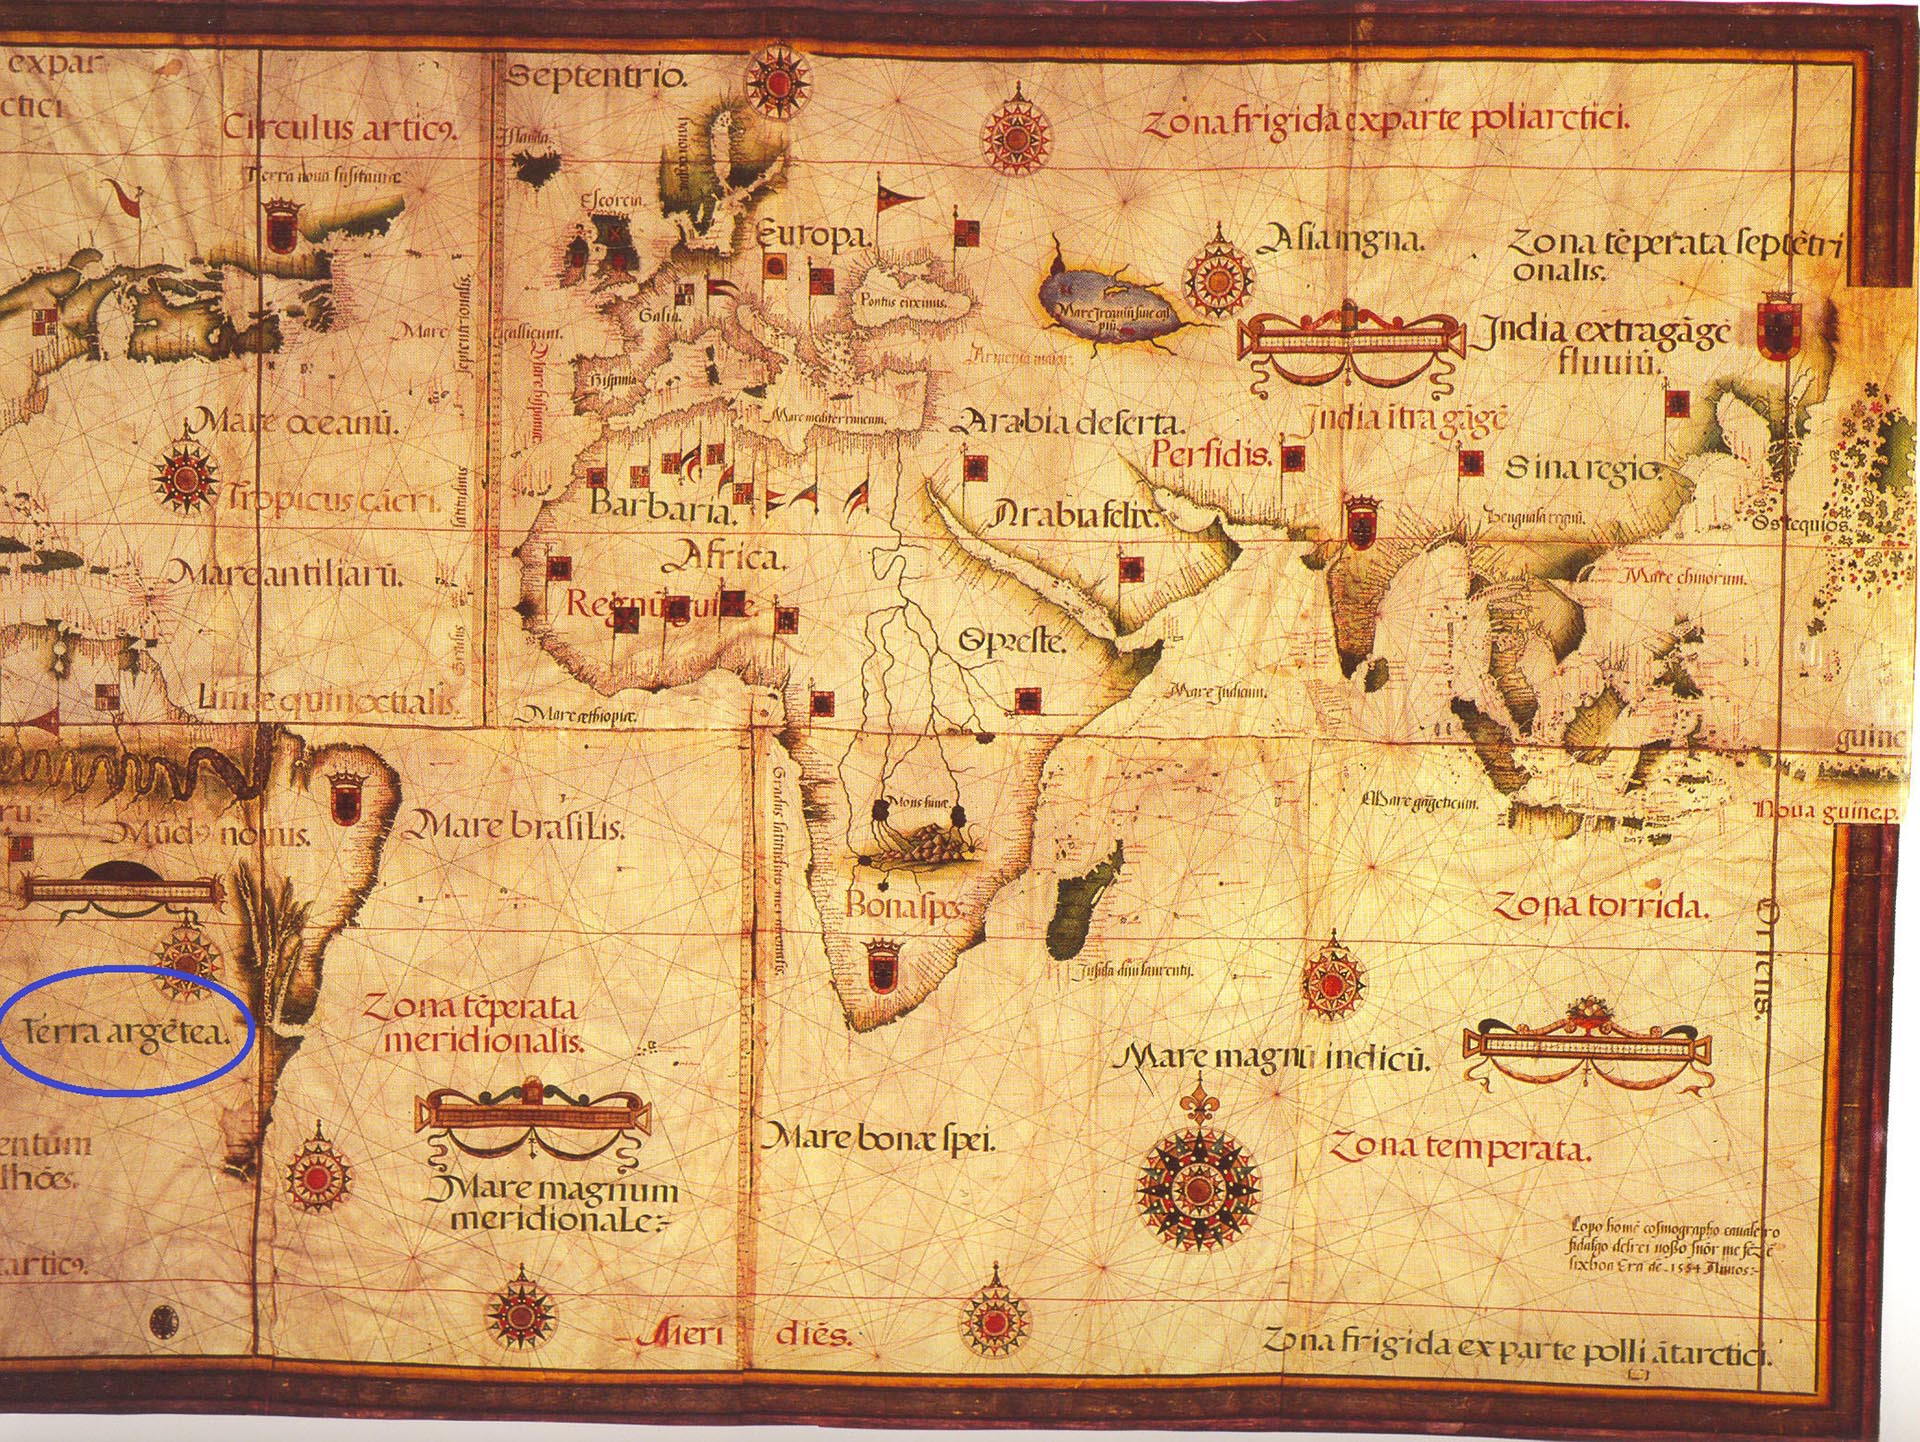 Mapa mundi del cartógrafo portugués Lopo Homan de 1554: en círculo, el nombre de "Terra Argetea" ("Tierra Argentina") para señalar a nuestra región, recién descubierta por los europeos